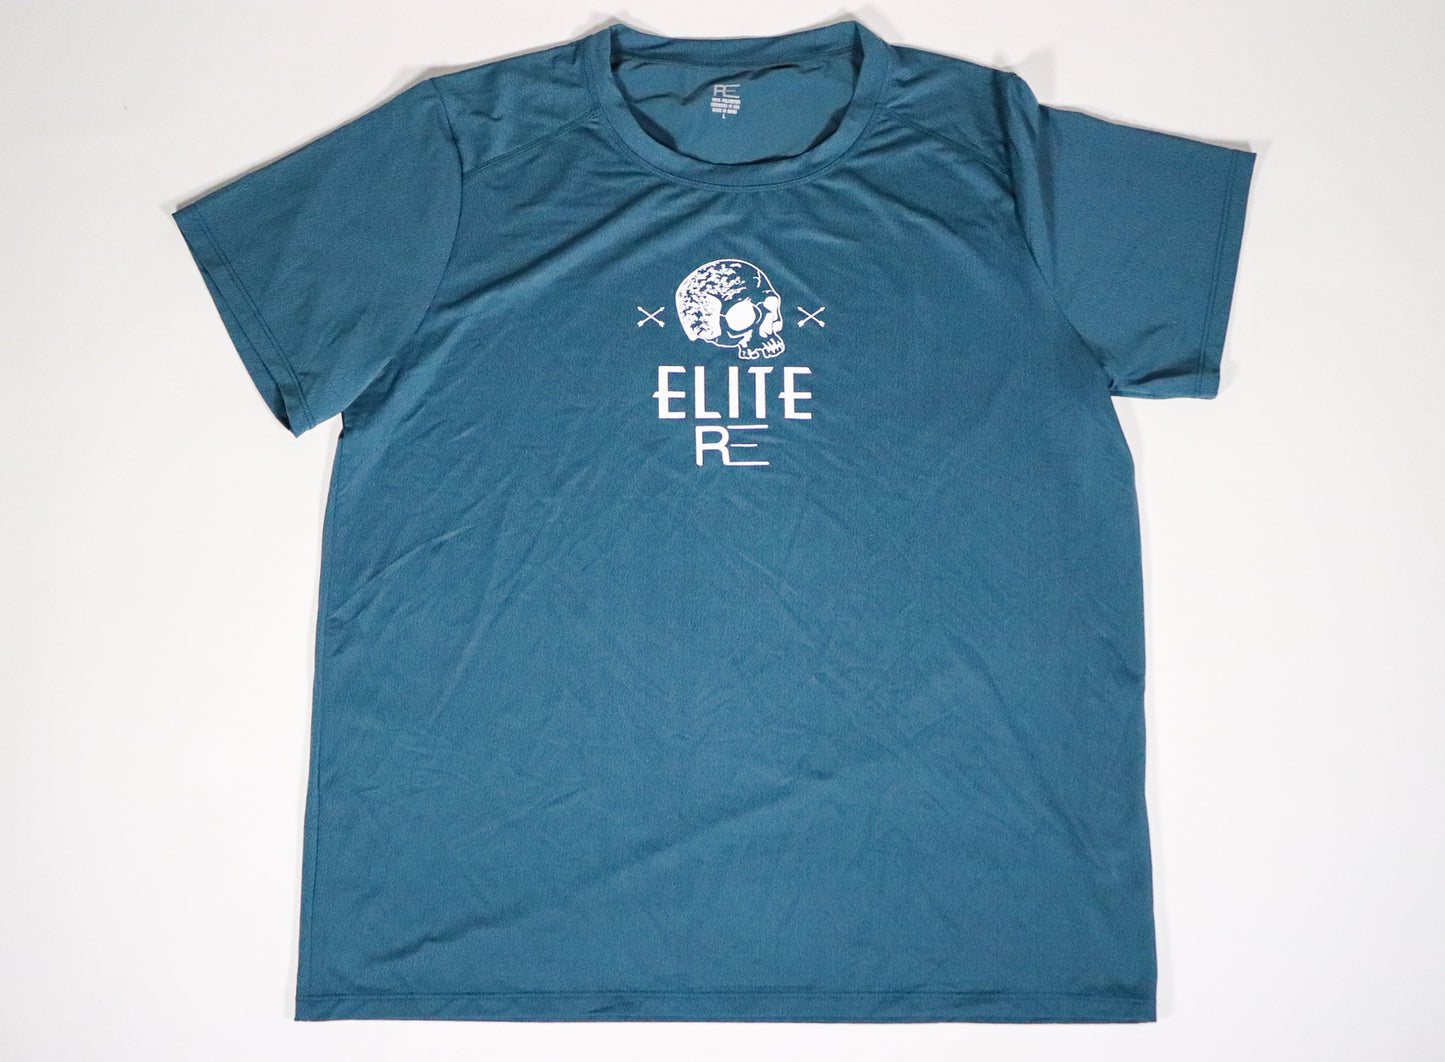 RE Elite Dot tech shirt